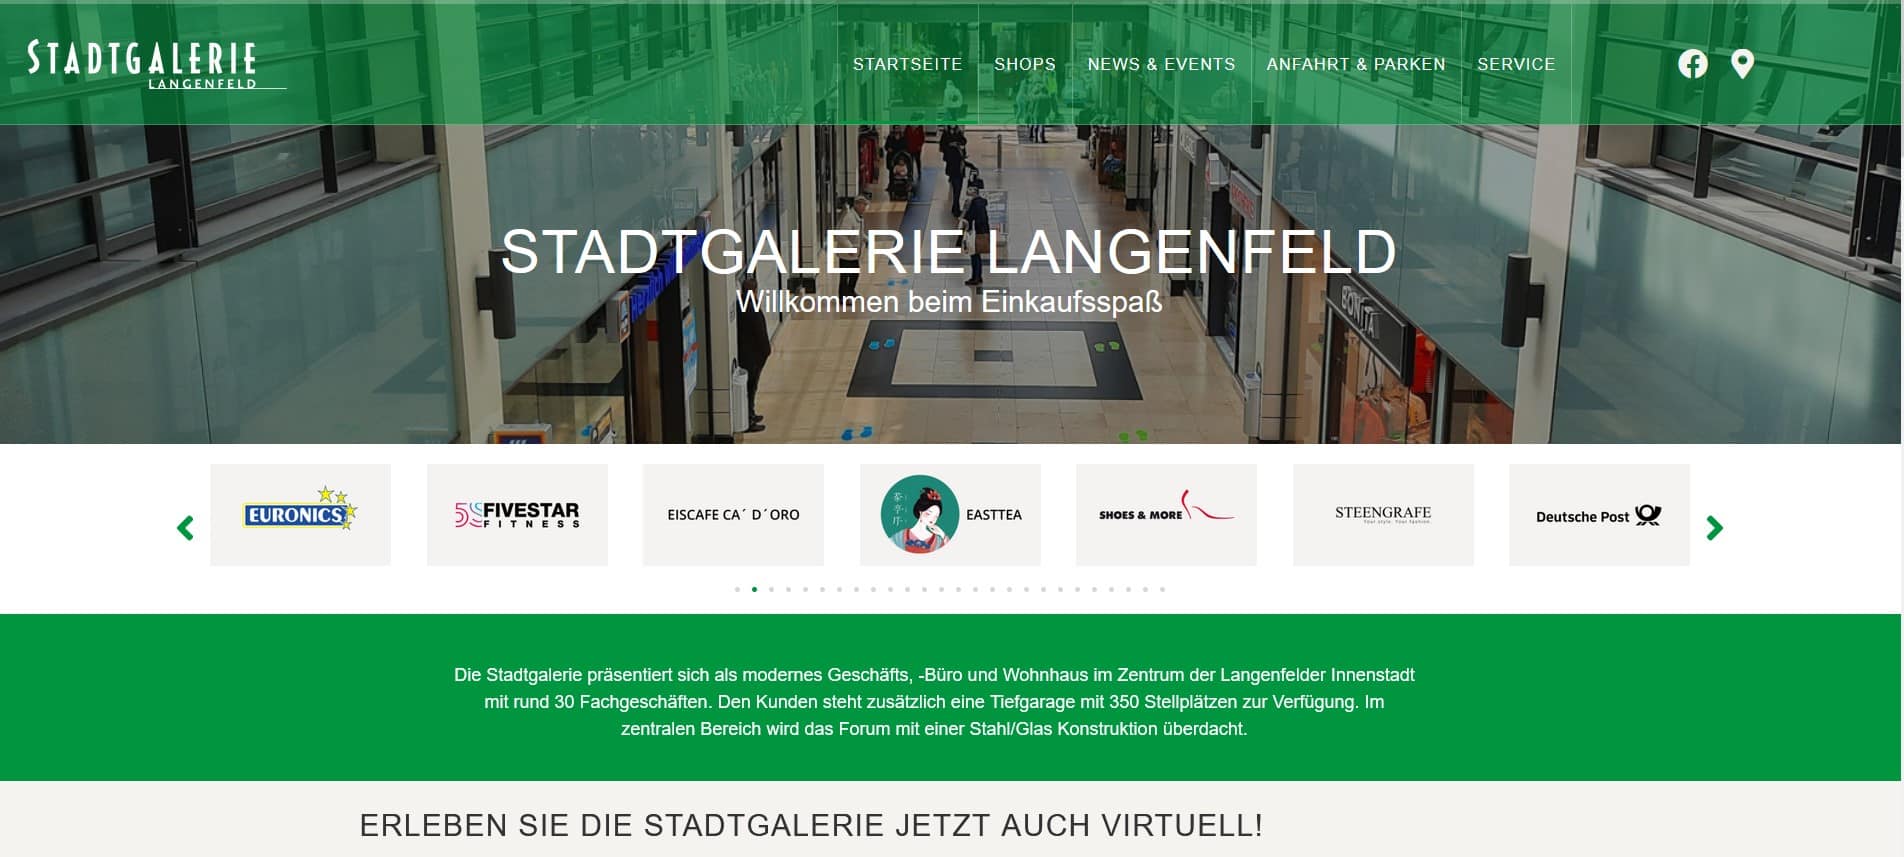 Stadtgalerie Langenfeld neue Webseite